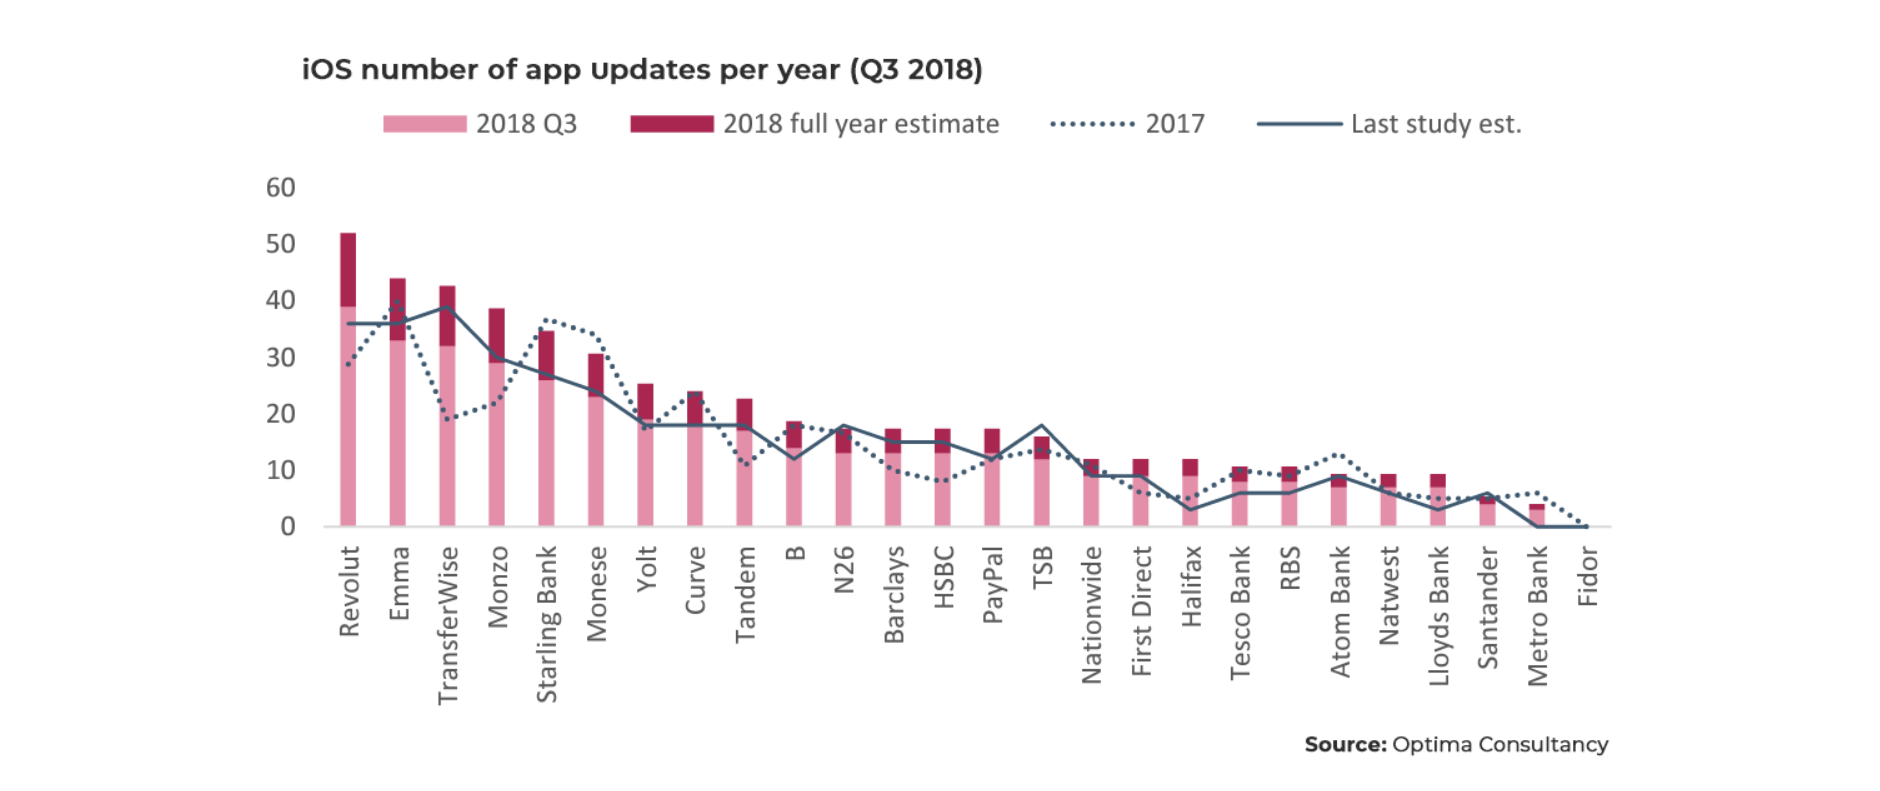 iOs-number-of-app-update-per-year-Q3-2018